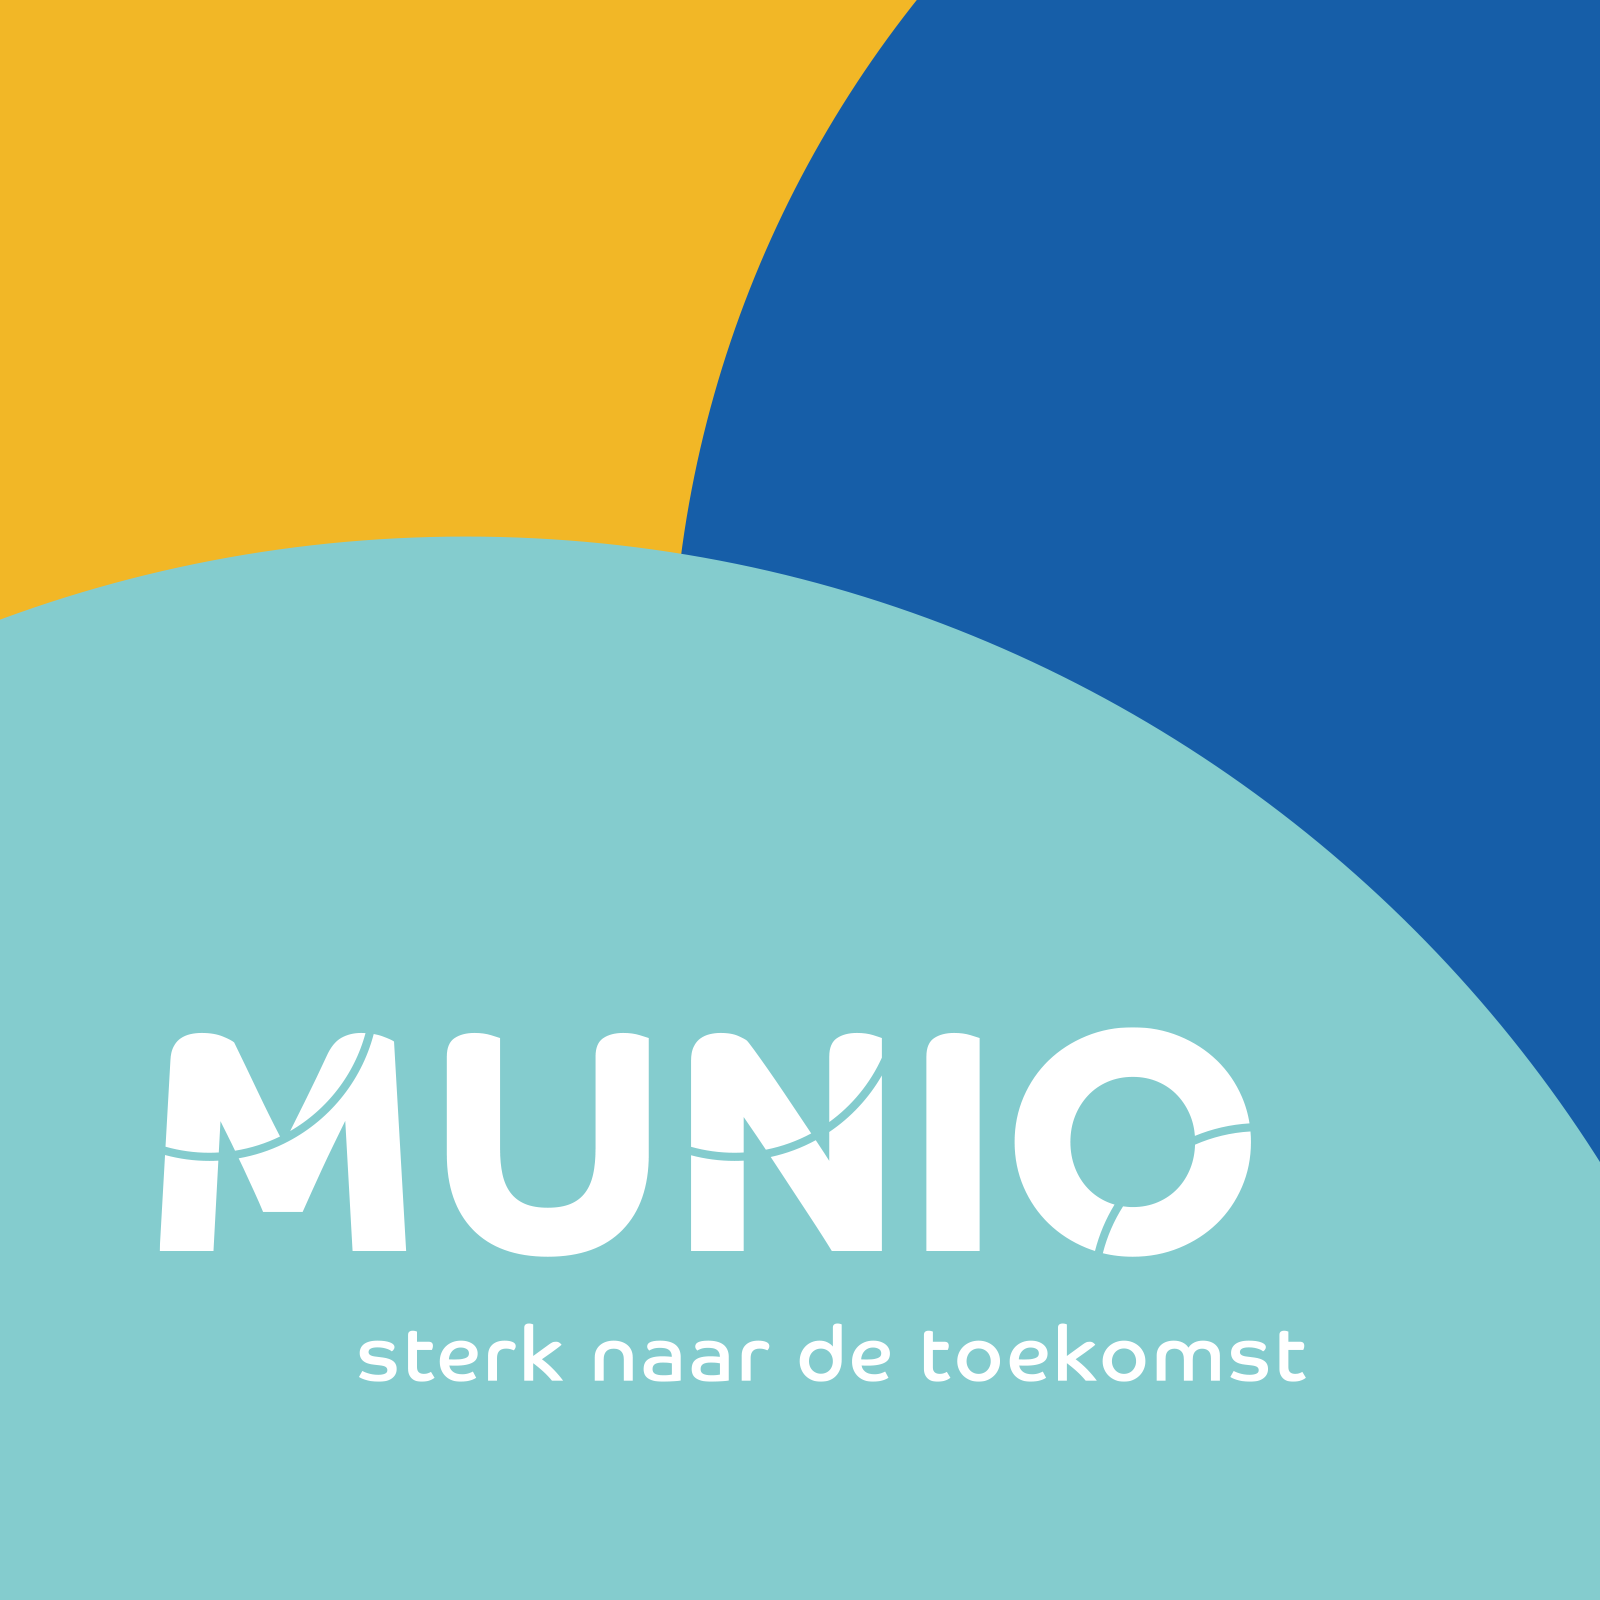 munio-corporate-identity-1